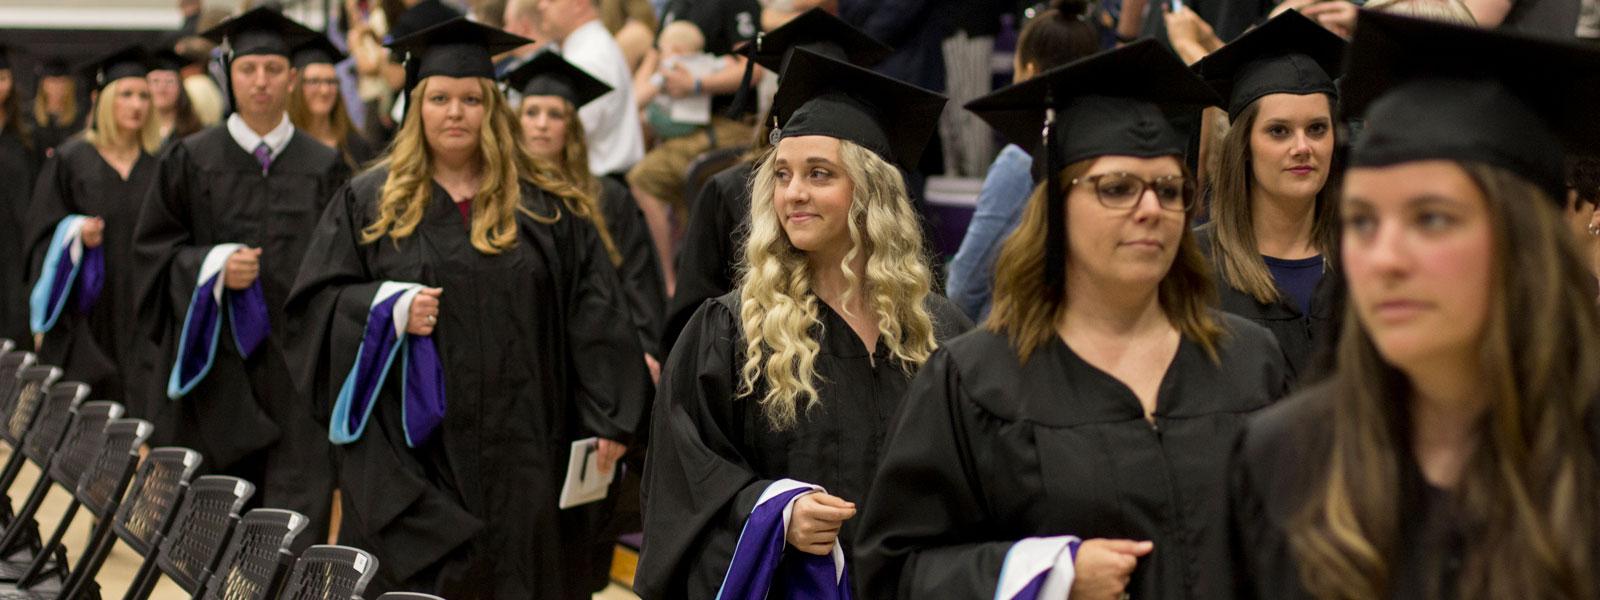 毕业典礼上，毕业生们手持硕士帽走在游行队伍中